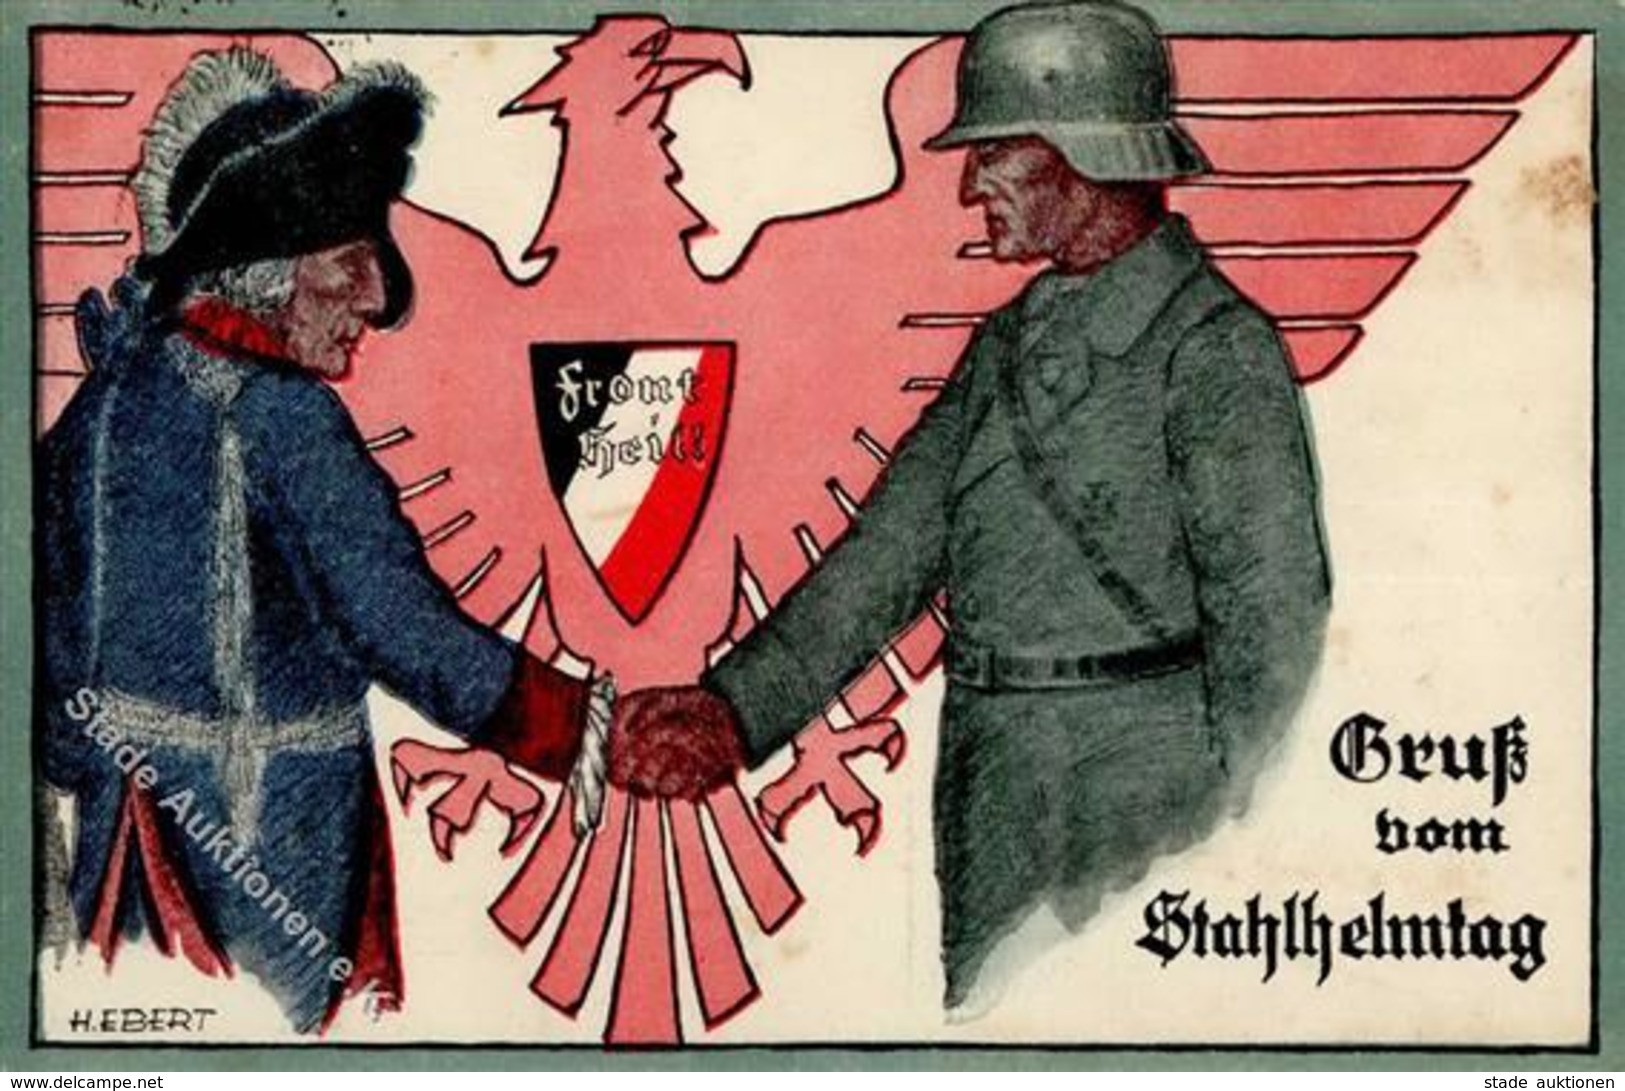 Der STAHLHELM WK II - FRONT HEIL! Gruß Vom STAHLHELMTAG 1932 - Sign. Künstlerkarte - Ecke Gestoßen II - Guerra 1939-45